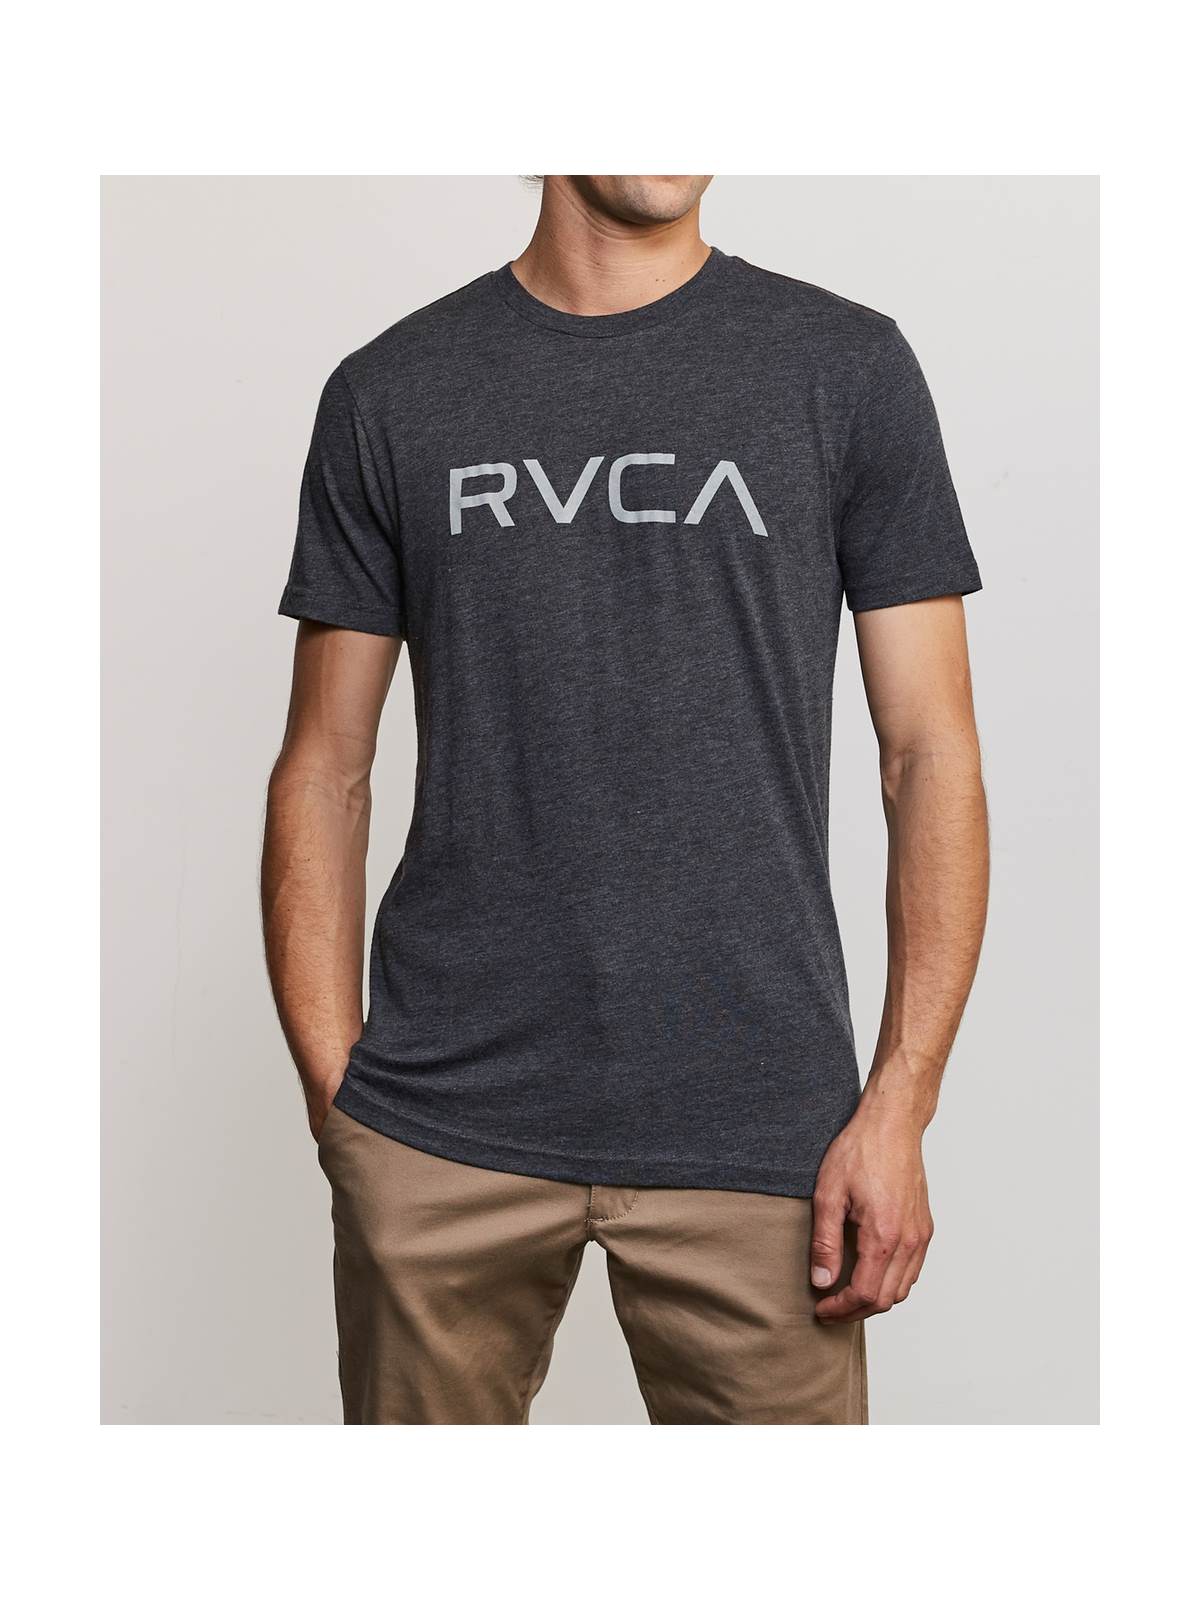 T-Shirt RVCA Big Rvca Ss - czarny